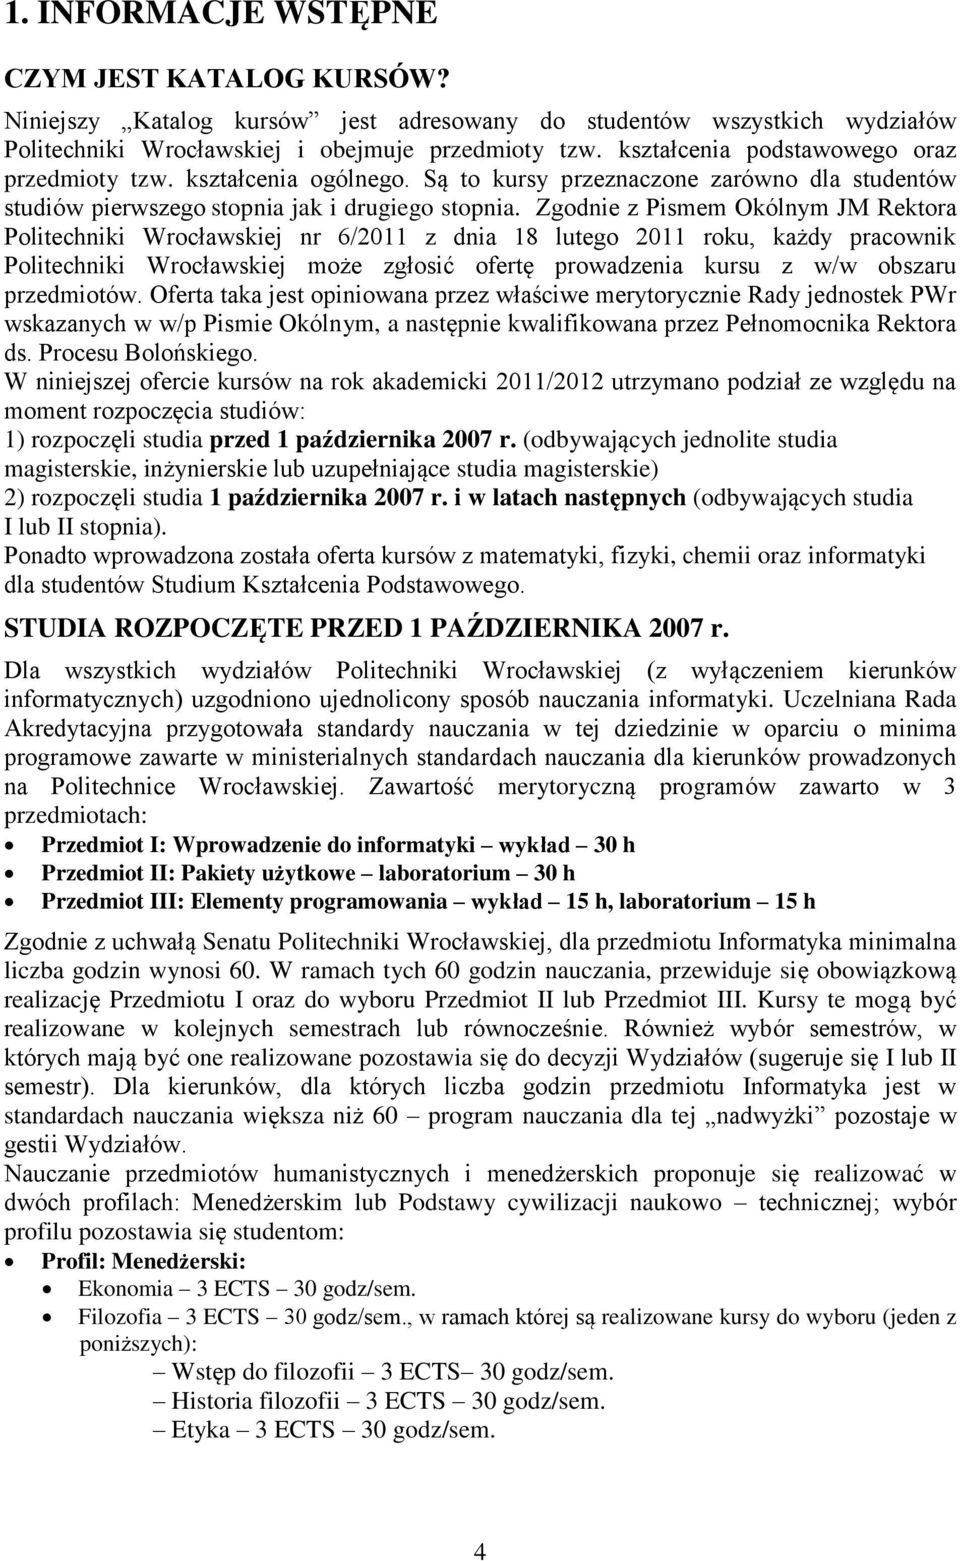 Zgodnie z Pismem Okólnym JM Rektora Politechniki Wrocławskiej nr 6/2011 z dnia 18 lutego 2011 roku, każdy pracownik Politechniki Wrocławskiej może zgłosić ofertę prowadzenia kursu z w/w obszaru